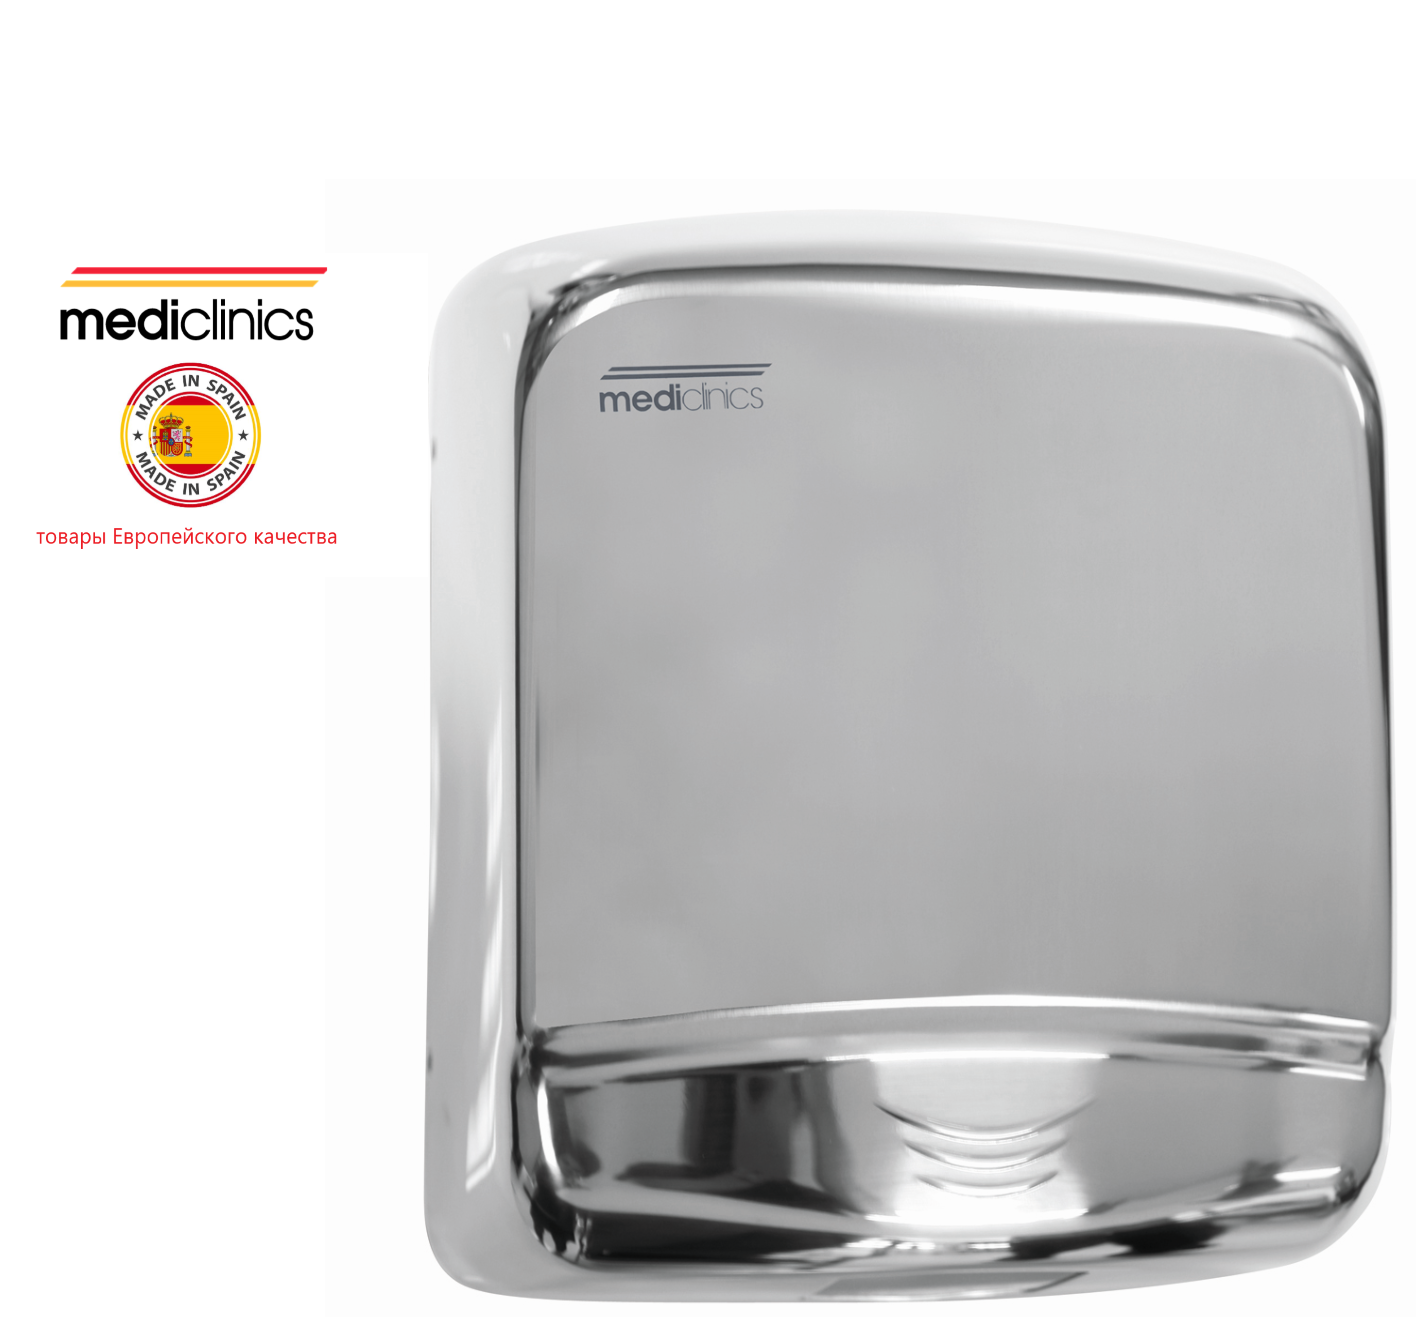 Сушилка для рук Mediclinics Optima M99AC, сенсорная, нержавеющая сталь, поверхность: глянцевая